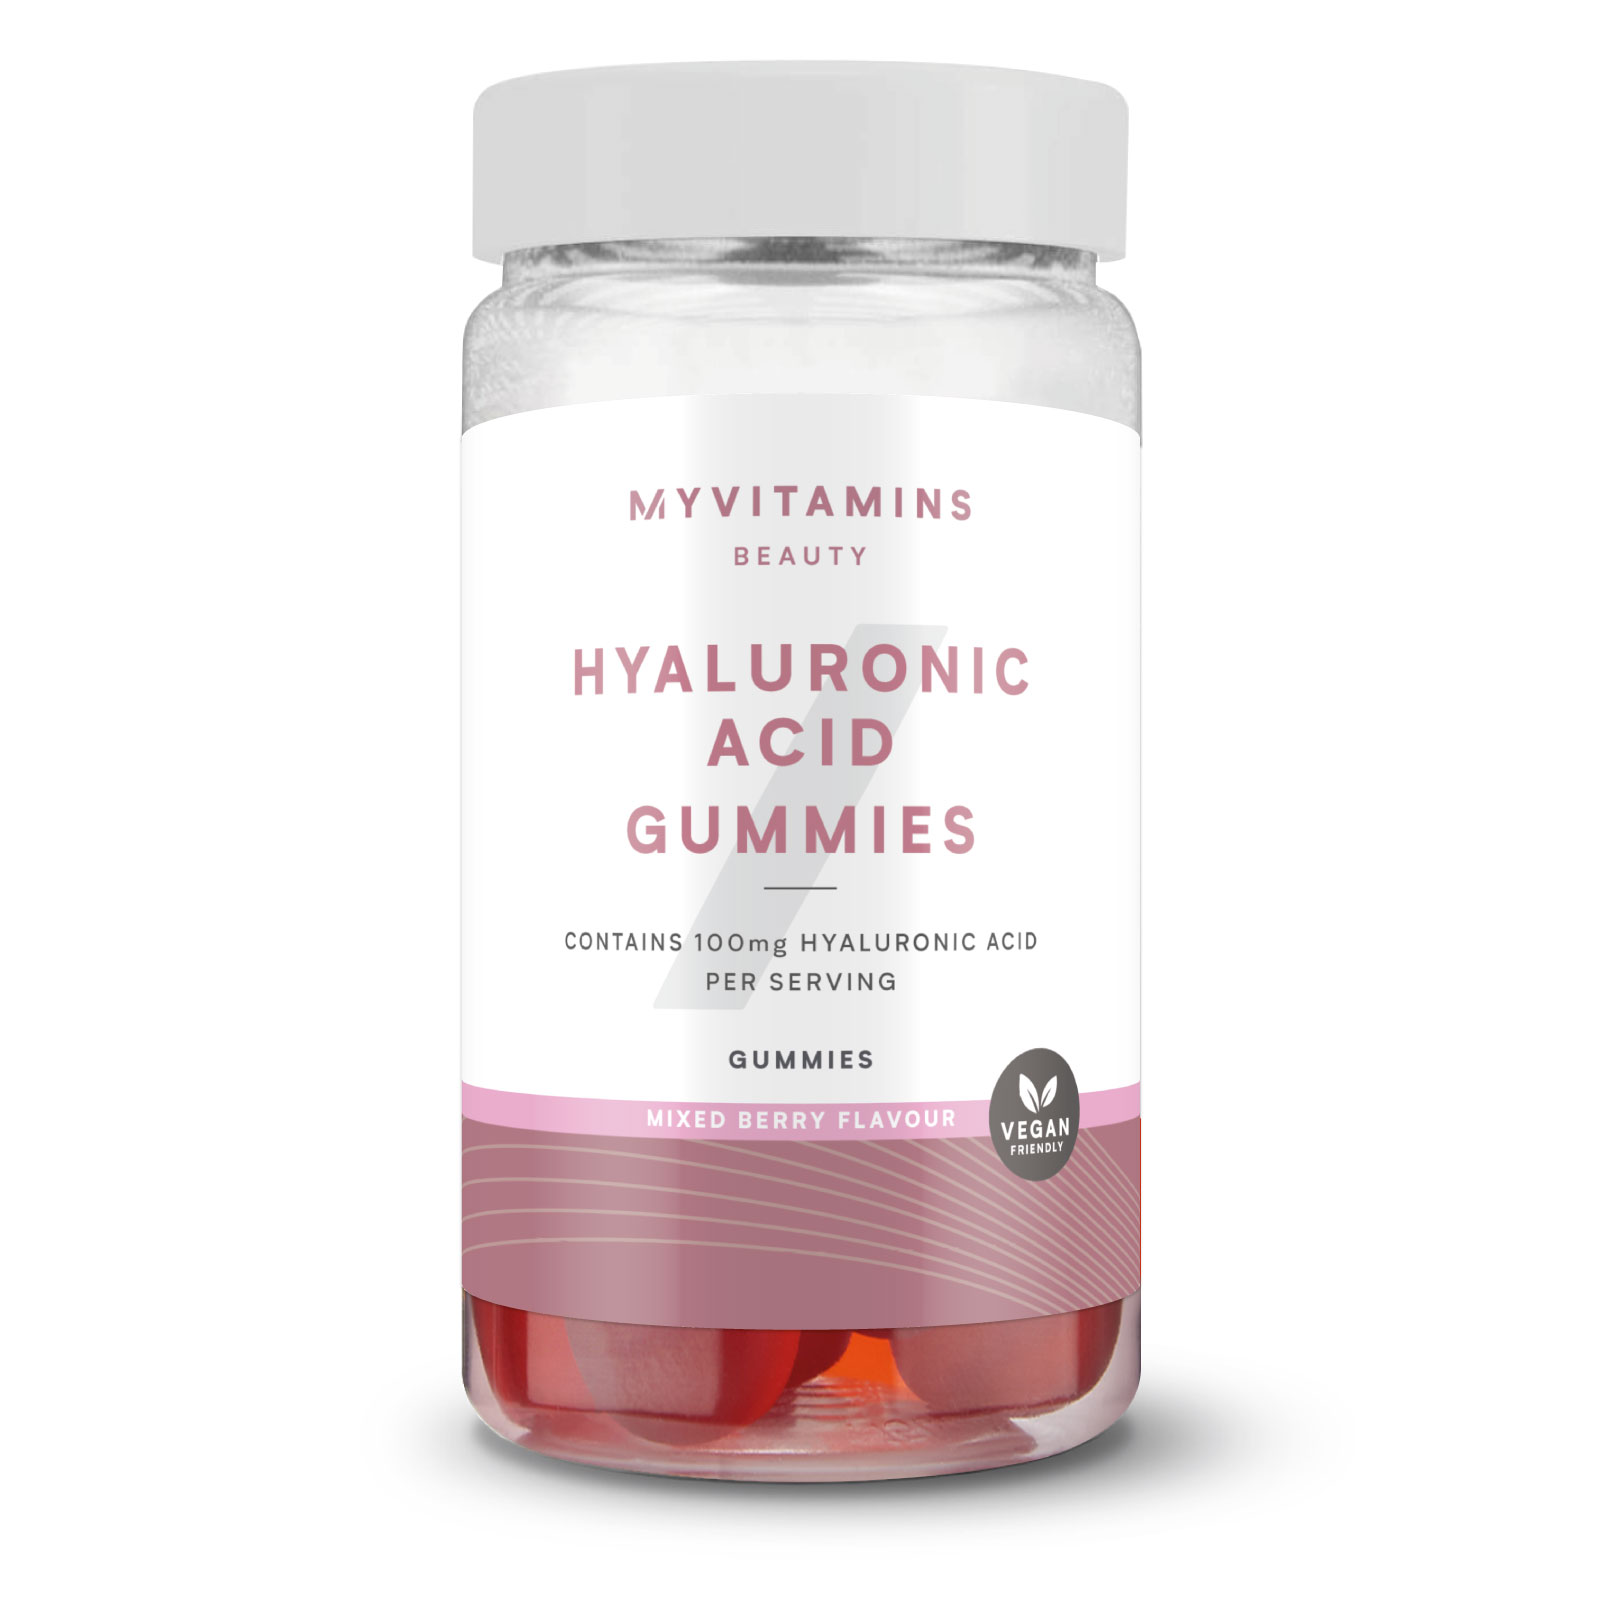 Myvitamins Hyaluronic Acid Gummies - 60gummies - Mixed Berries